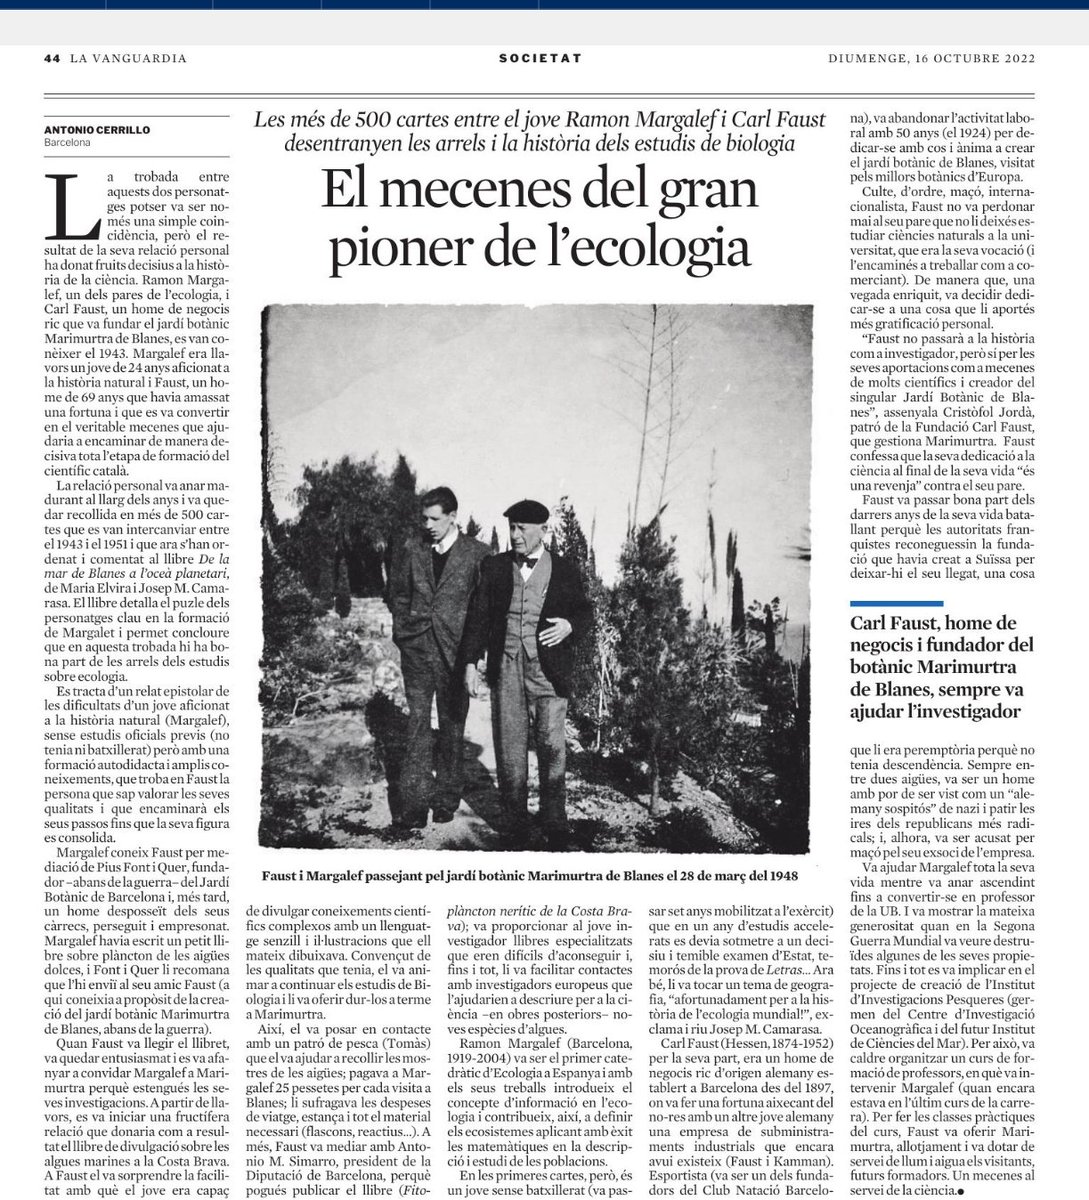 'El mecenes del gran pioner de l'ecologia'. Un bon article de @acerrillo3 a @LaVanguardia, sobre la relació de l'ecòleg Ramon Margalef i Carl Faust. Imperdible!🙂👇